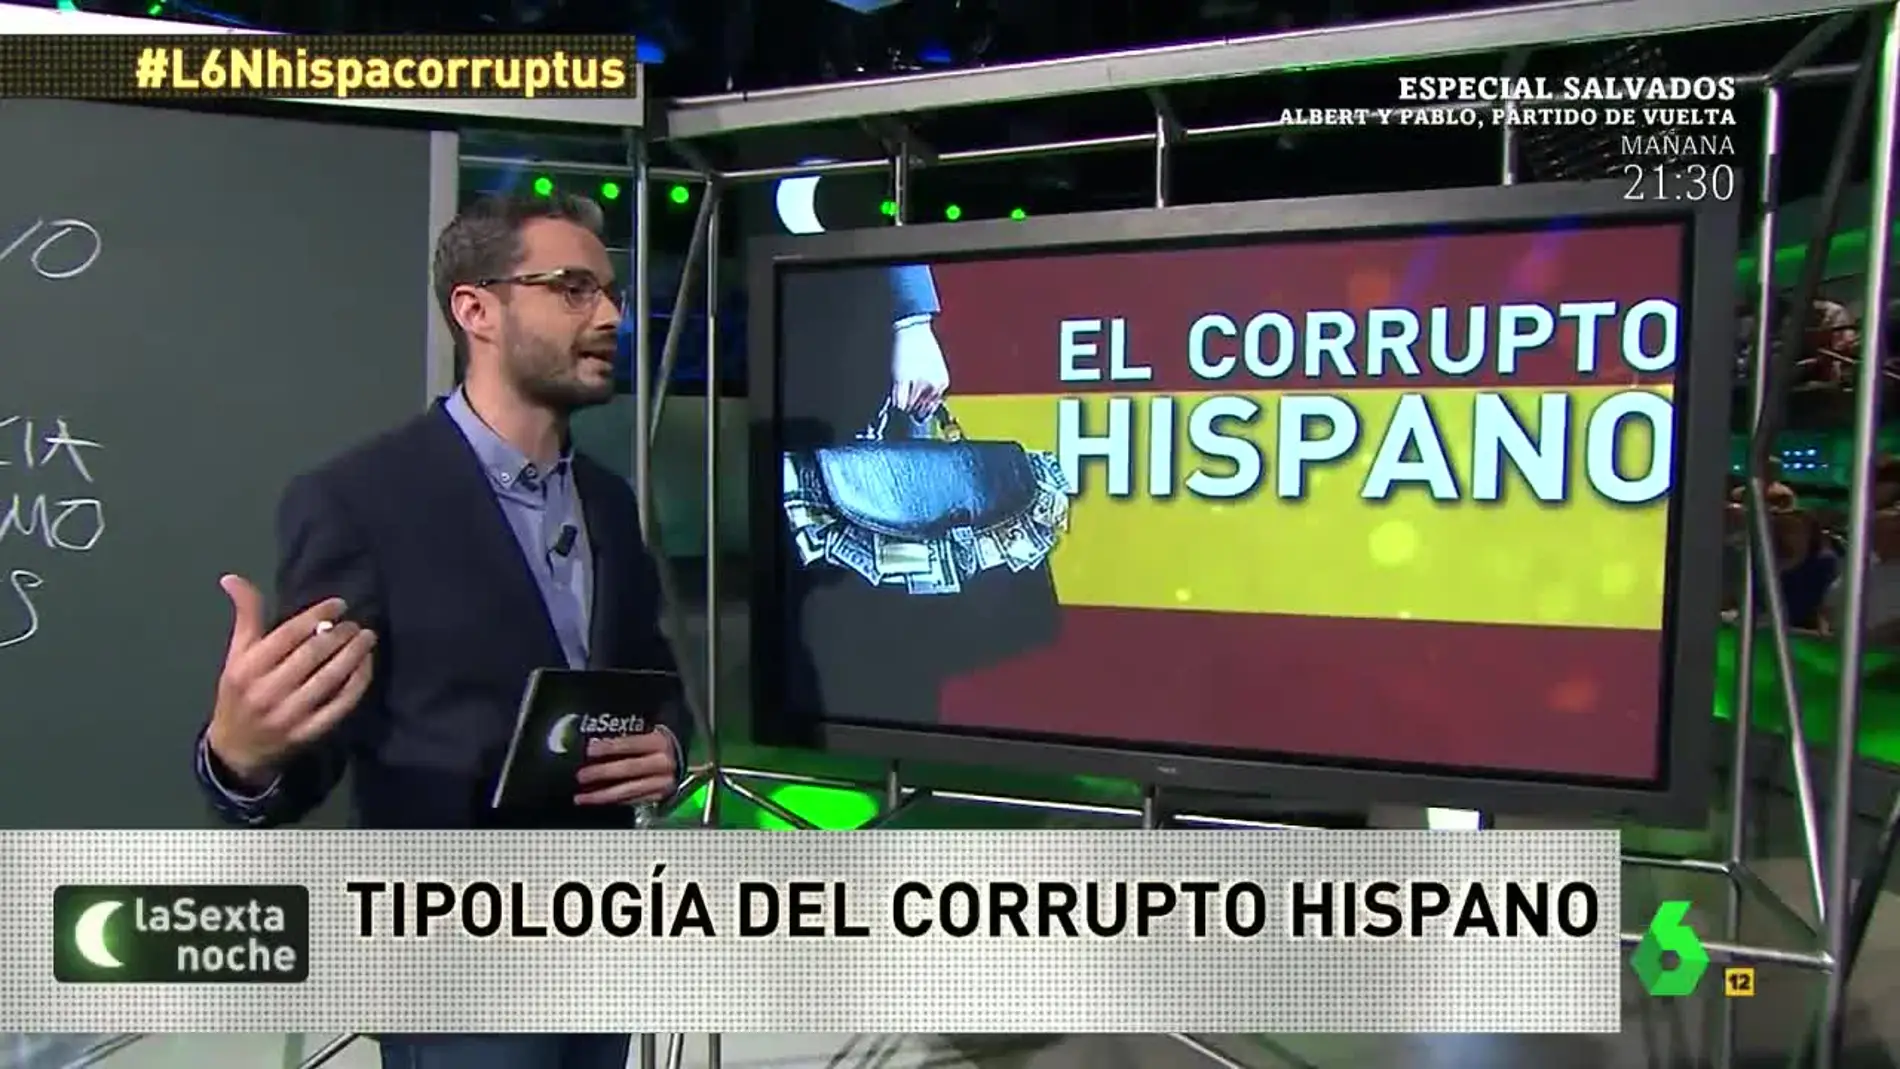 El corrupto hispano